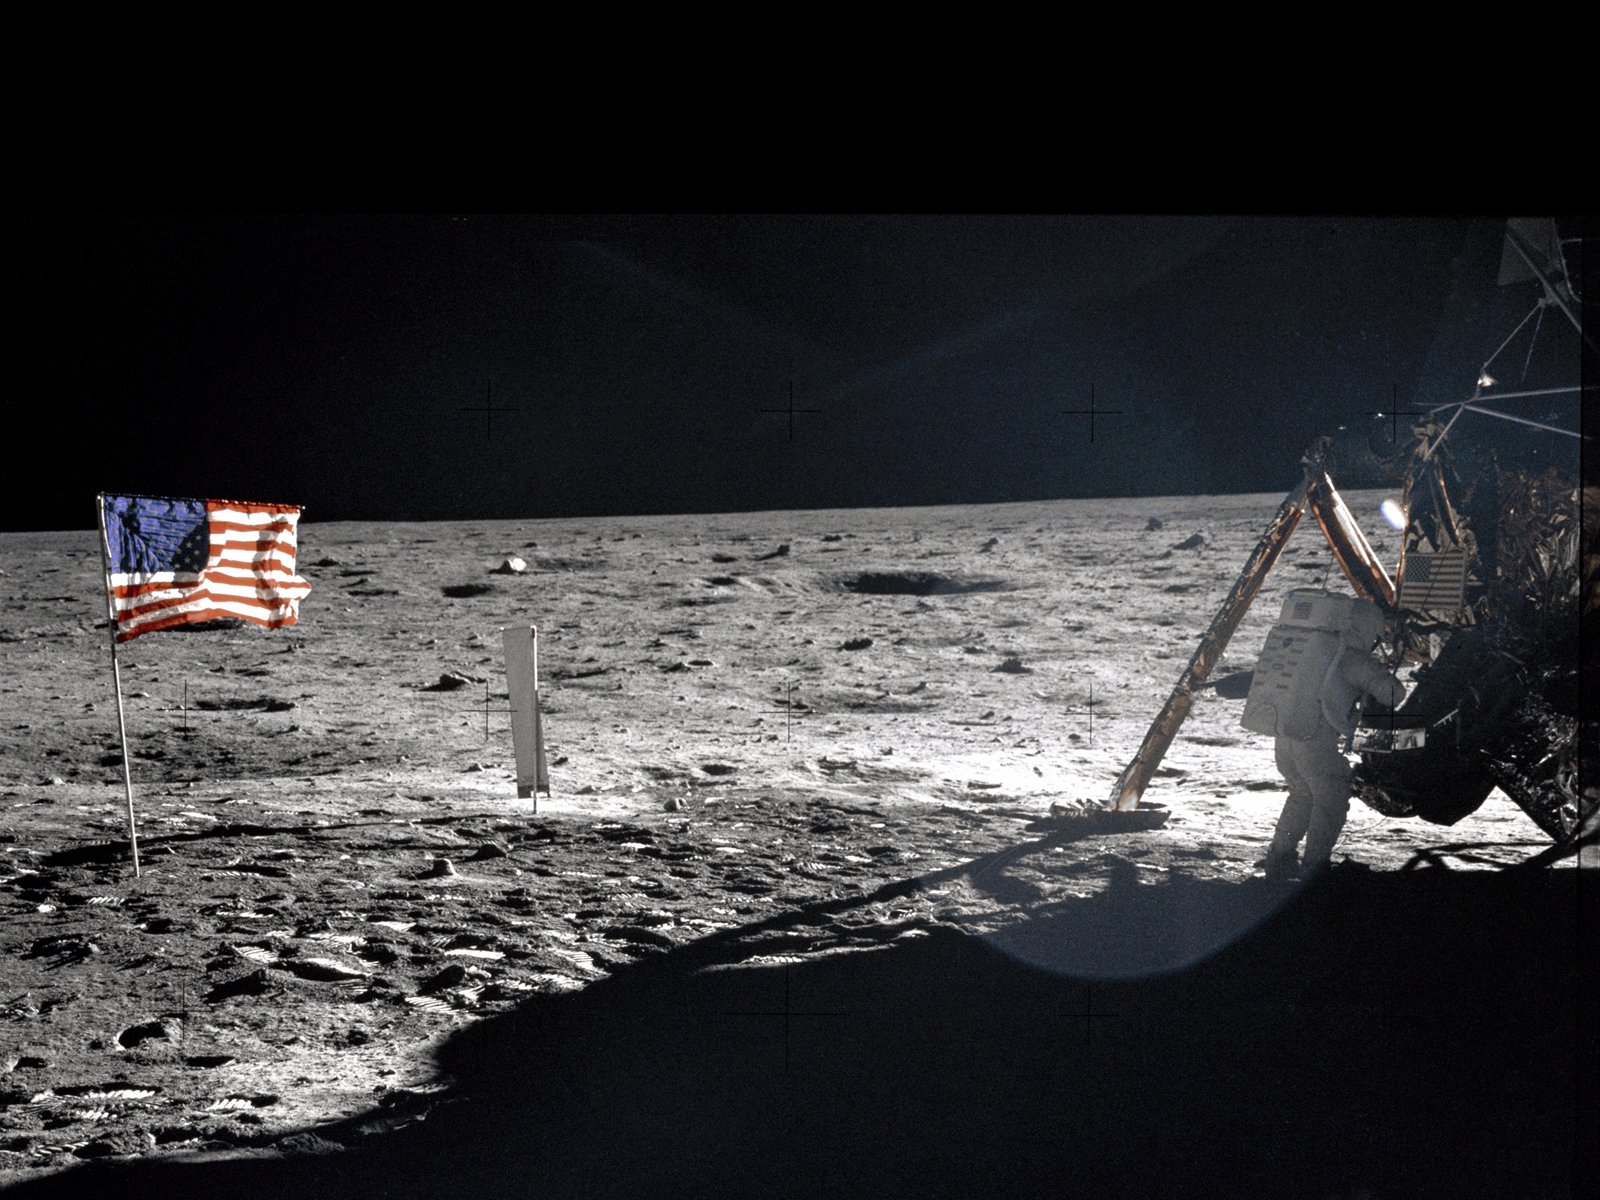 壁纸1600x1200One Giant Leap for Mankind  Neil Armstrong On The Moon 登月舱旁的阿姆斯壮壁纸 阿波罗11号登月40周年纪念壁纸壁纸 阿波罗11号登月40周年纪念壁纸图片 阿波罗11号登月40周年纪念壁纸素材 人文壁纸 人文图库 人文图片素材桌面壁纸